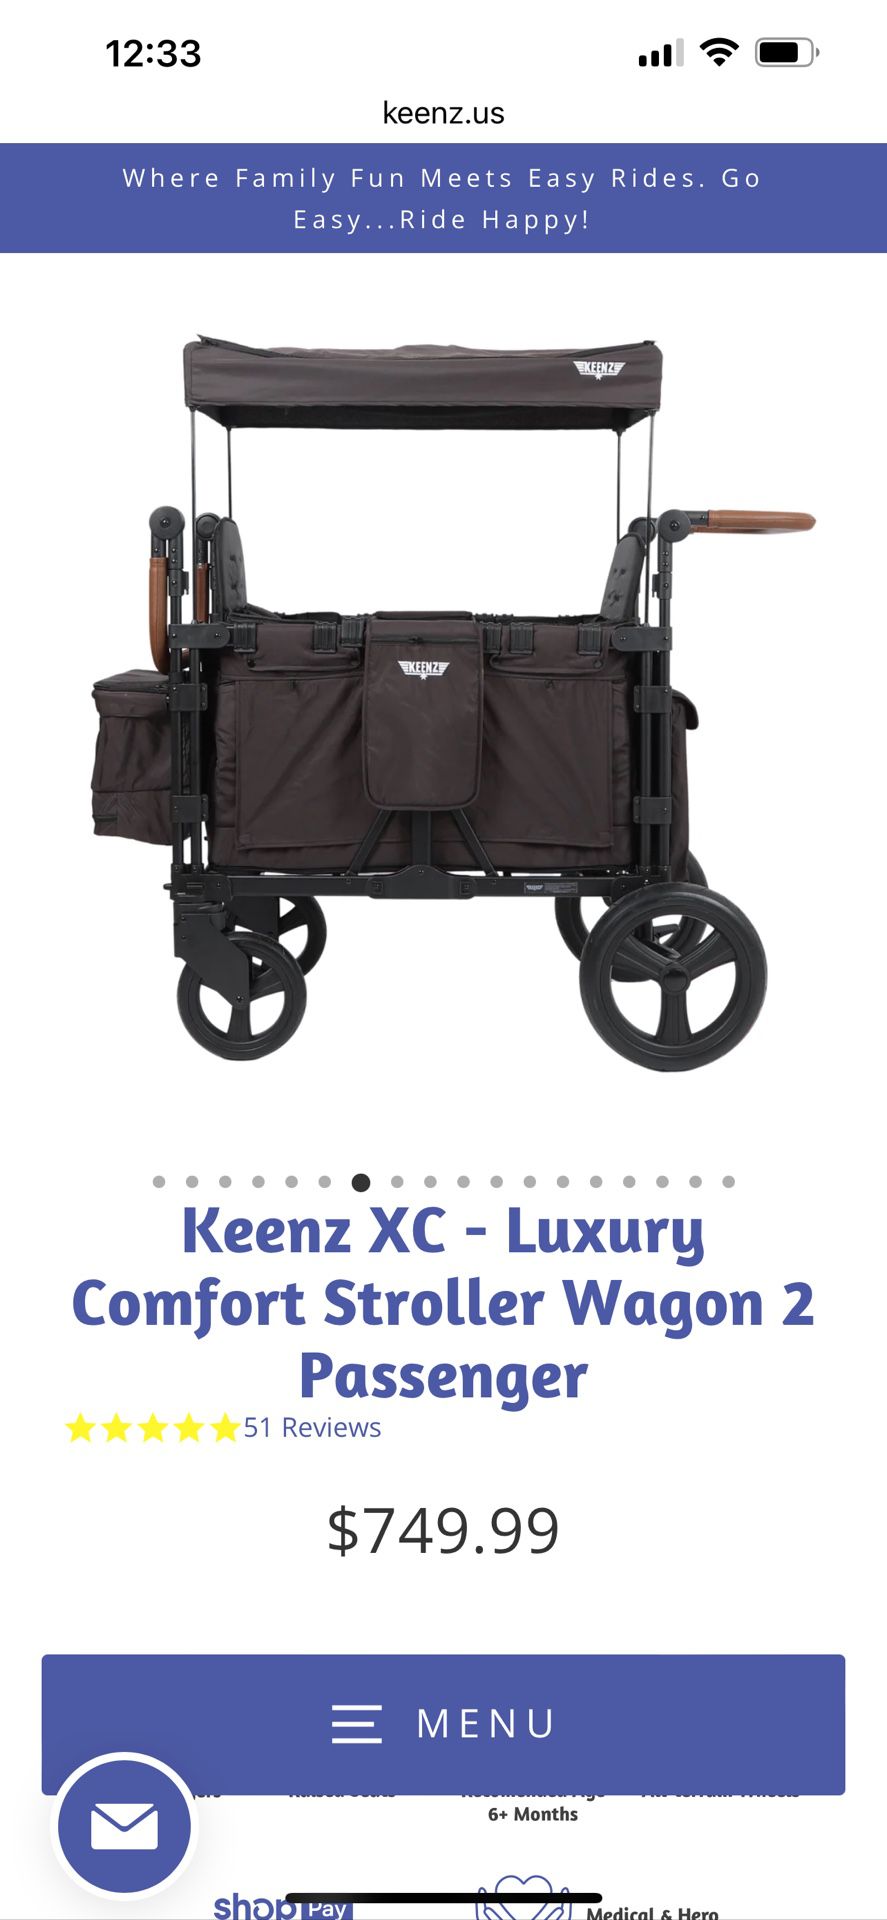 Keenz xc Wagon/stroller